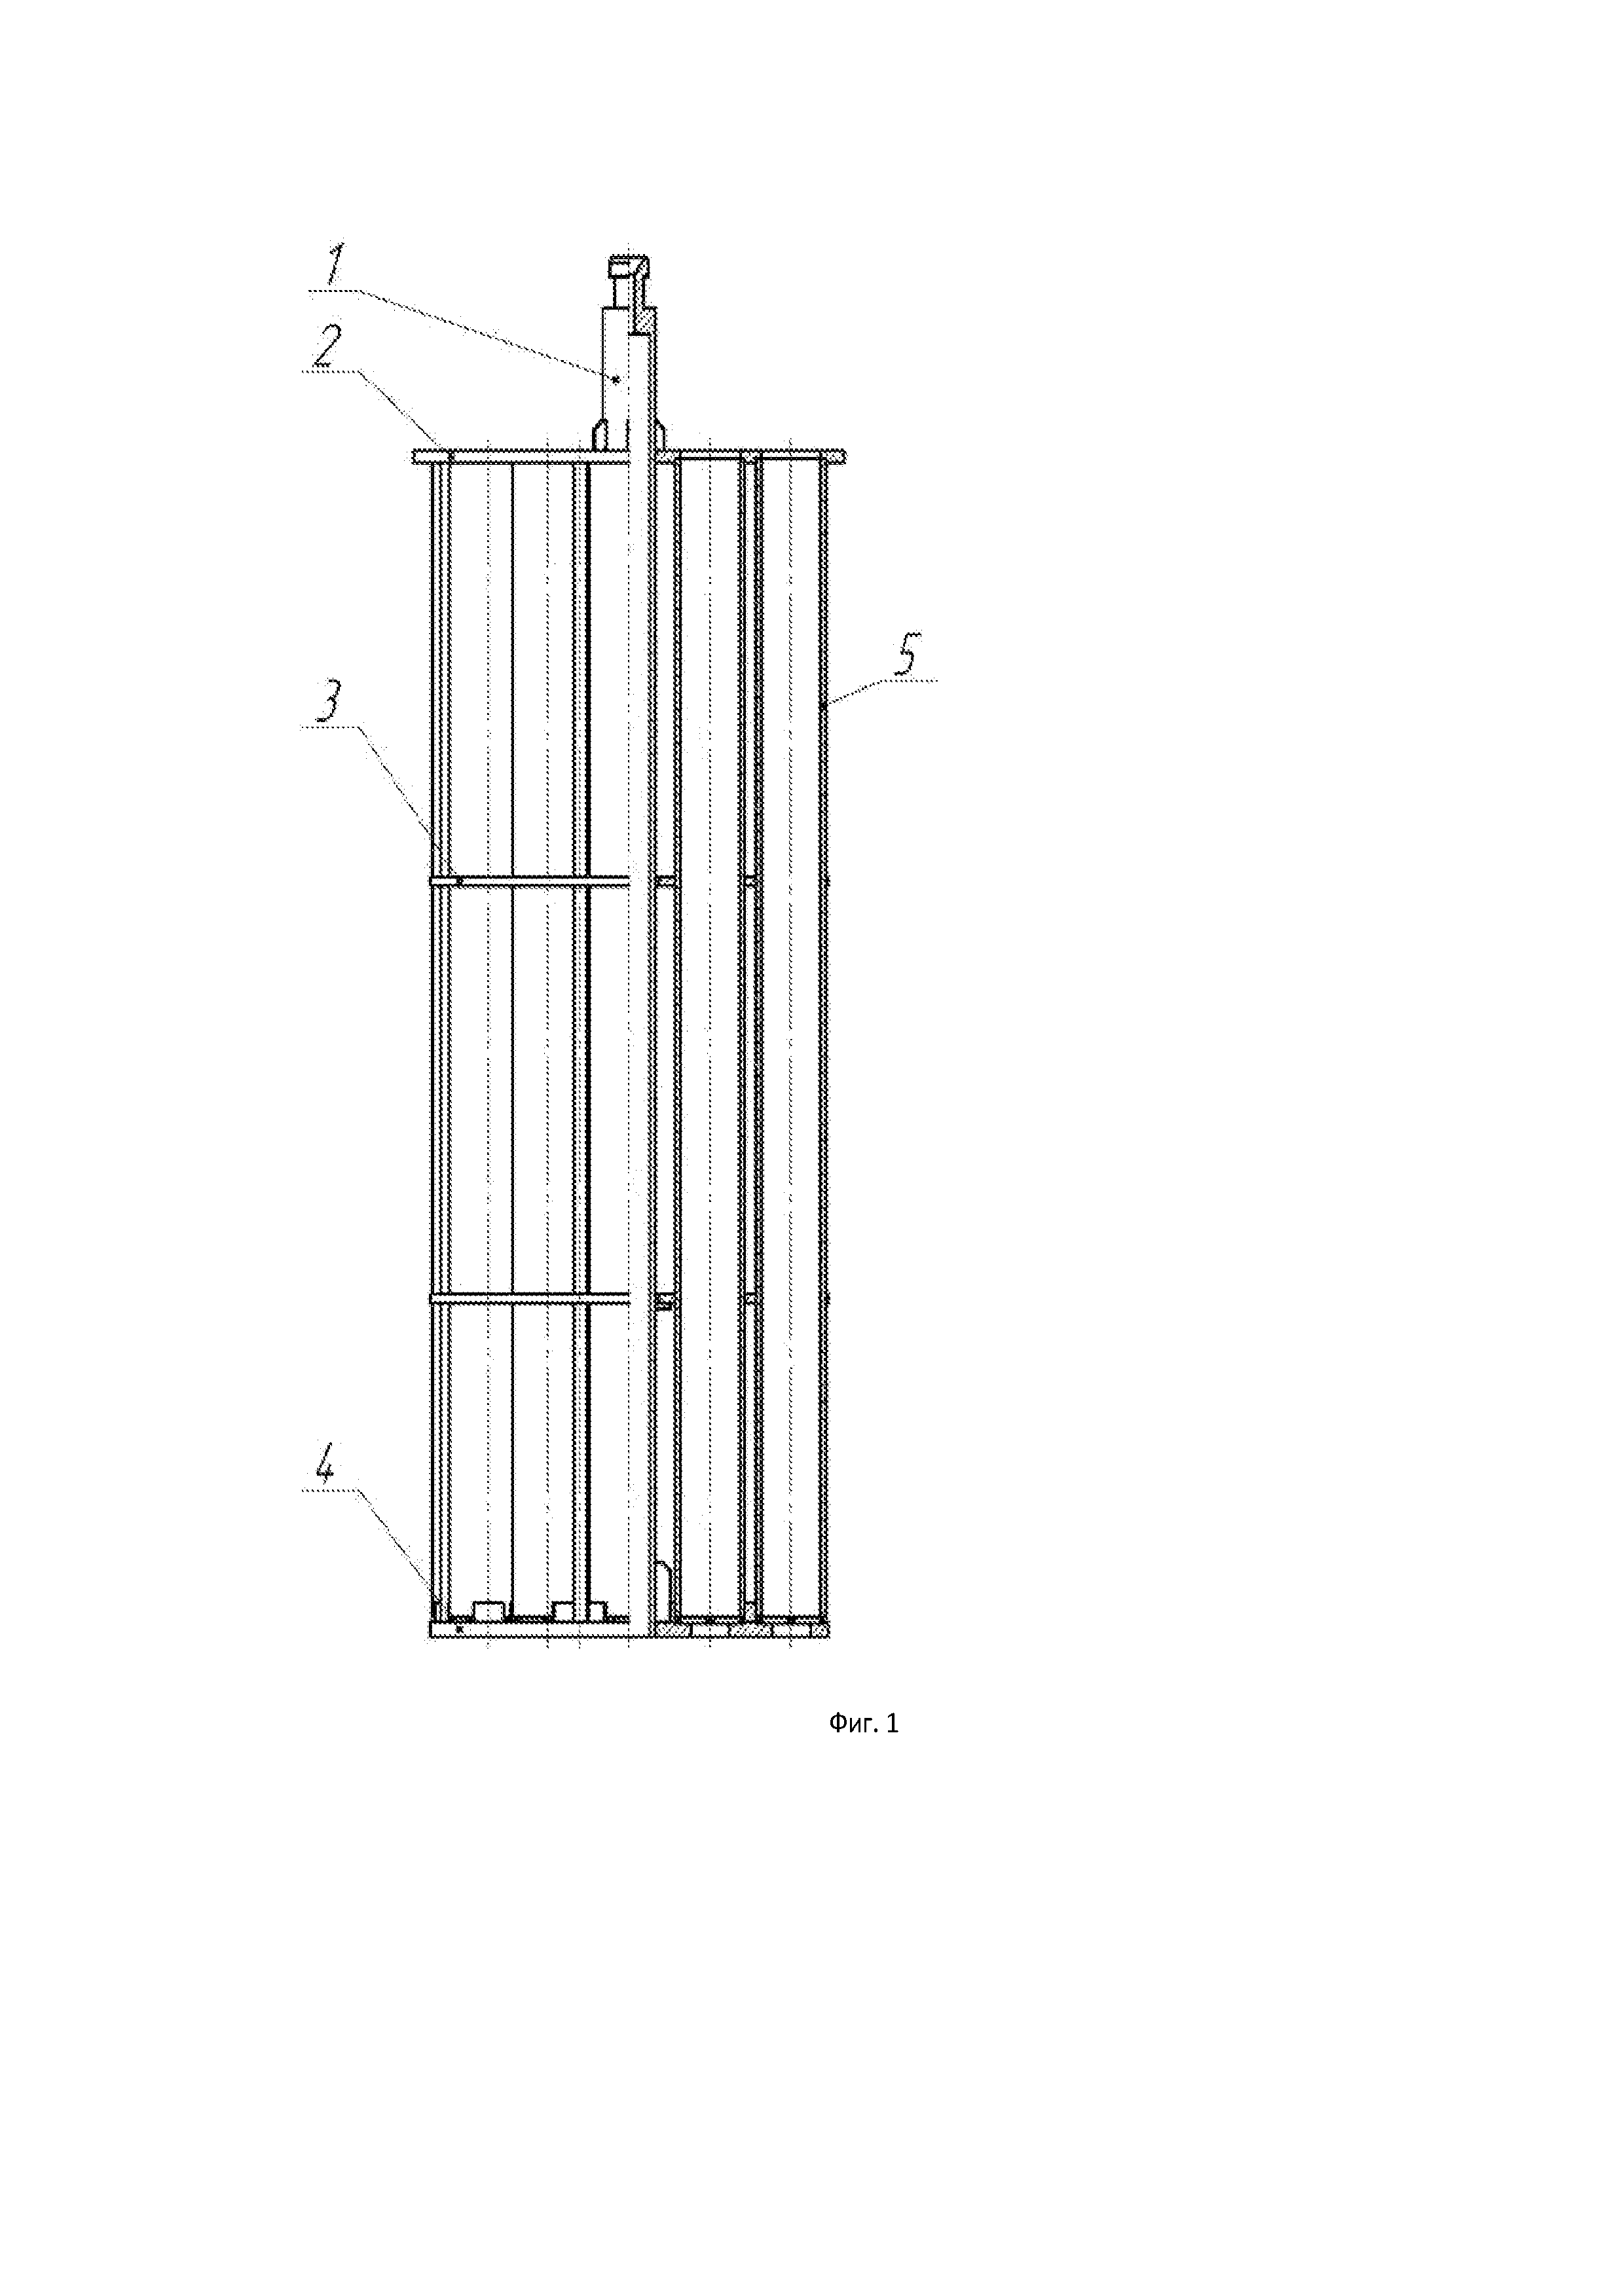 Чехол хранения отработавших тепловыделяющих сборок от реакторов типа ВВЭР-1000